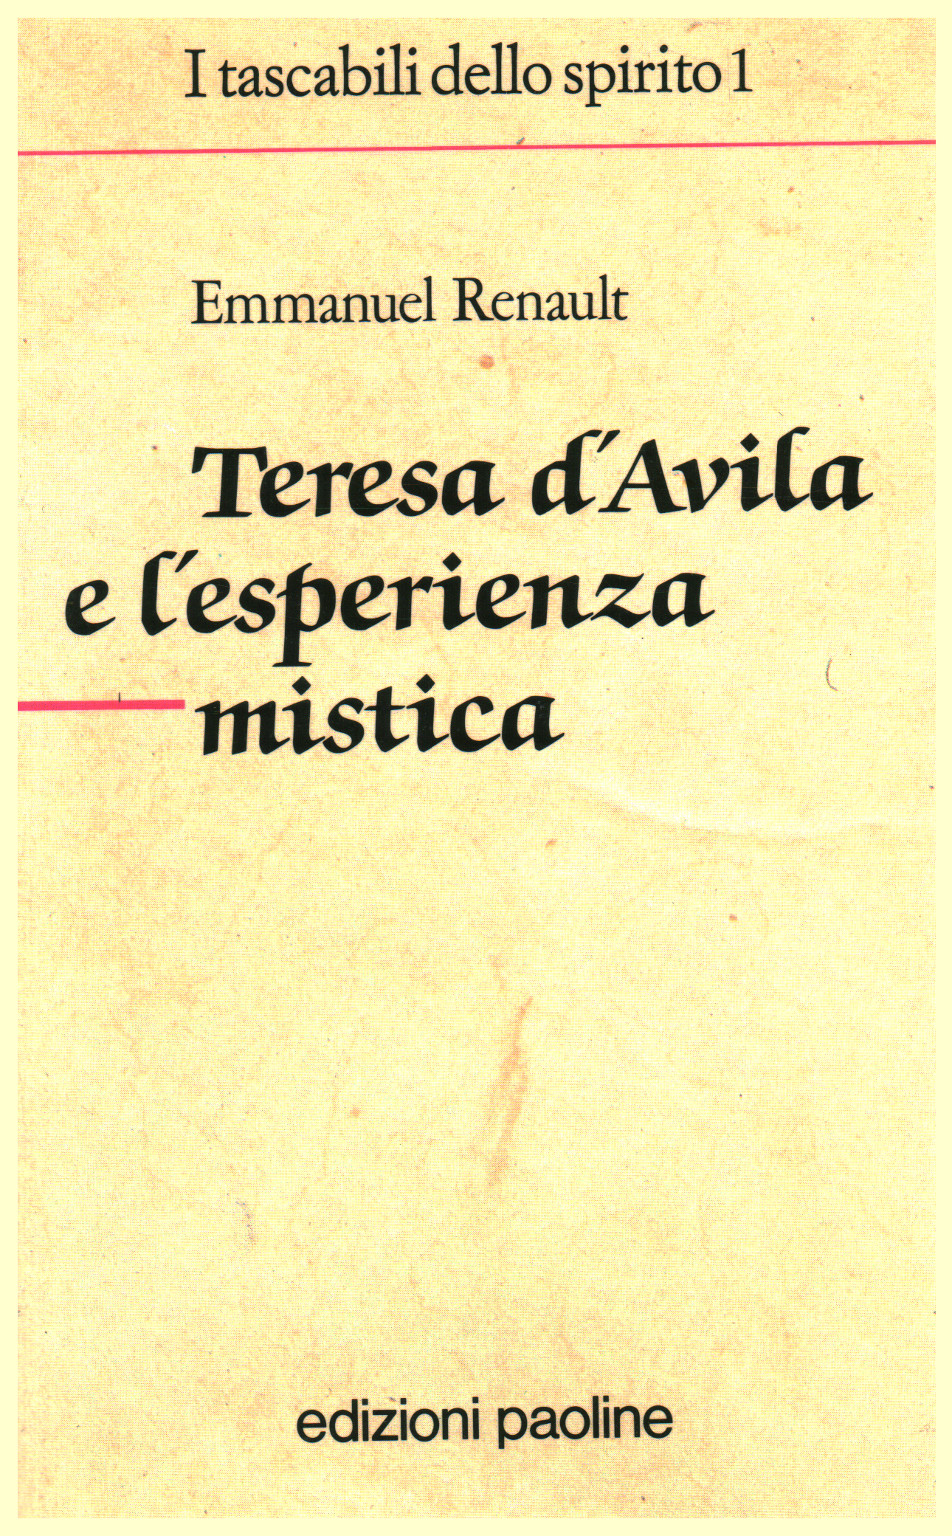 Teresa von Avila und die Exp